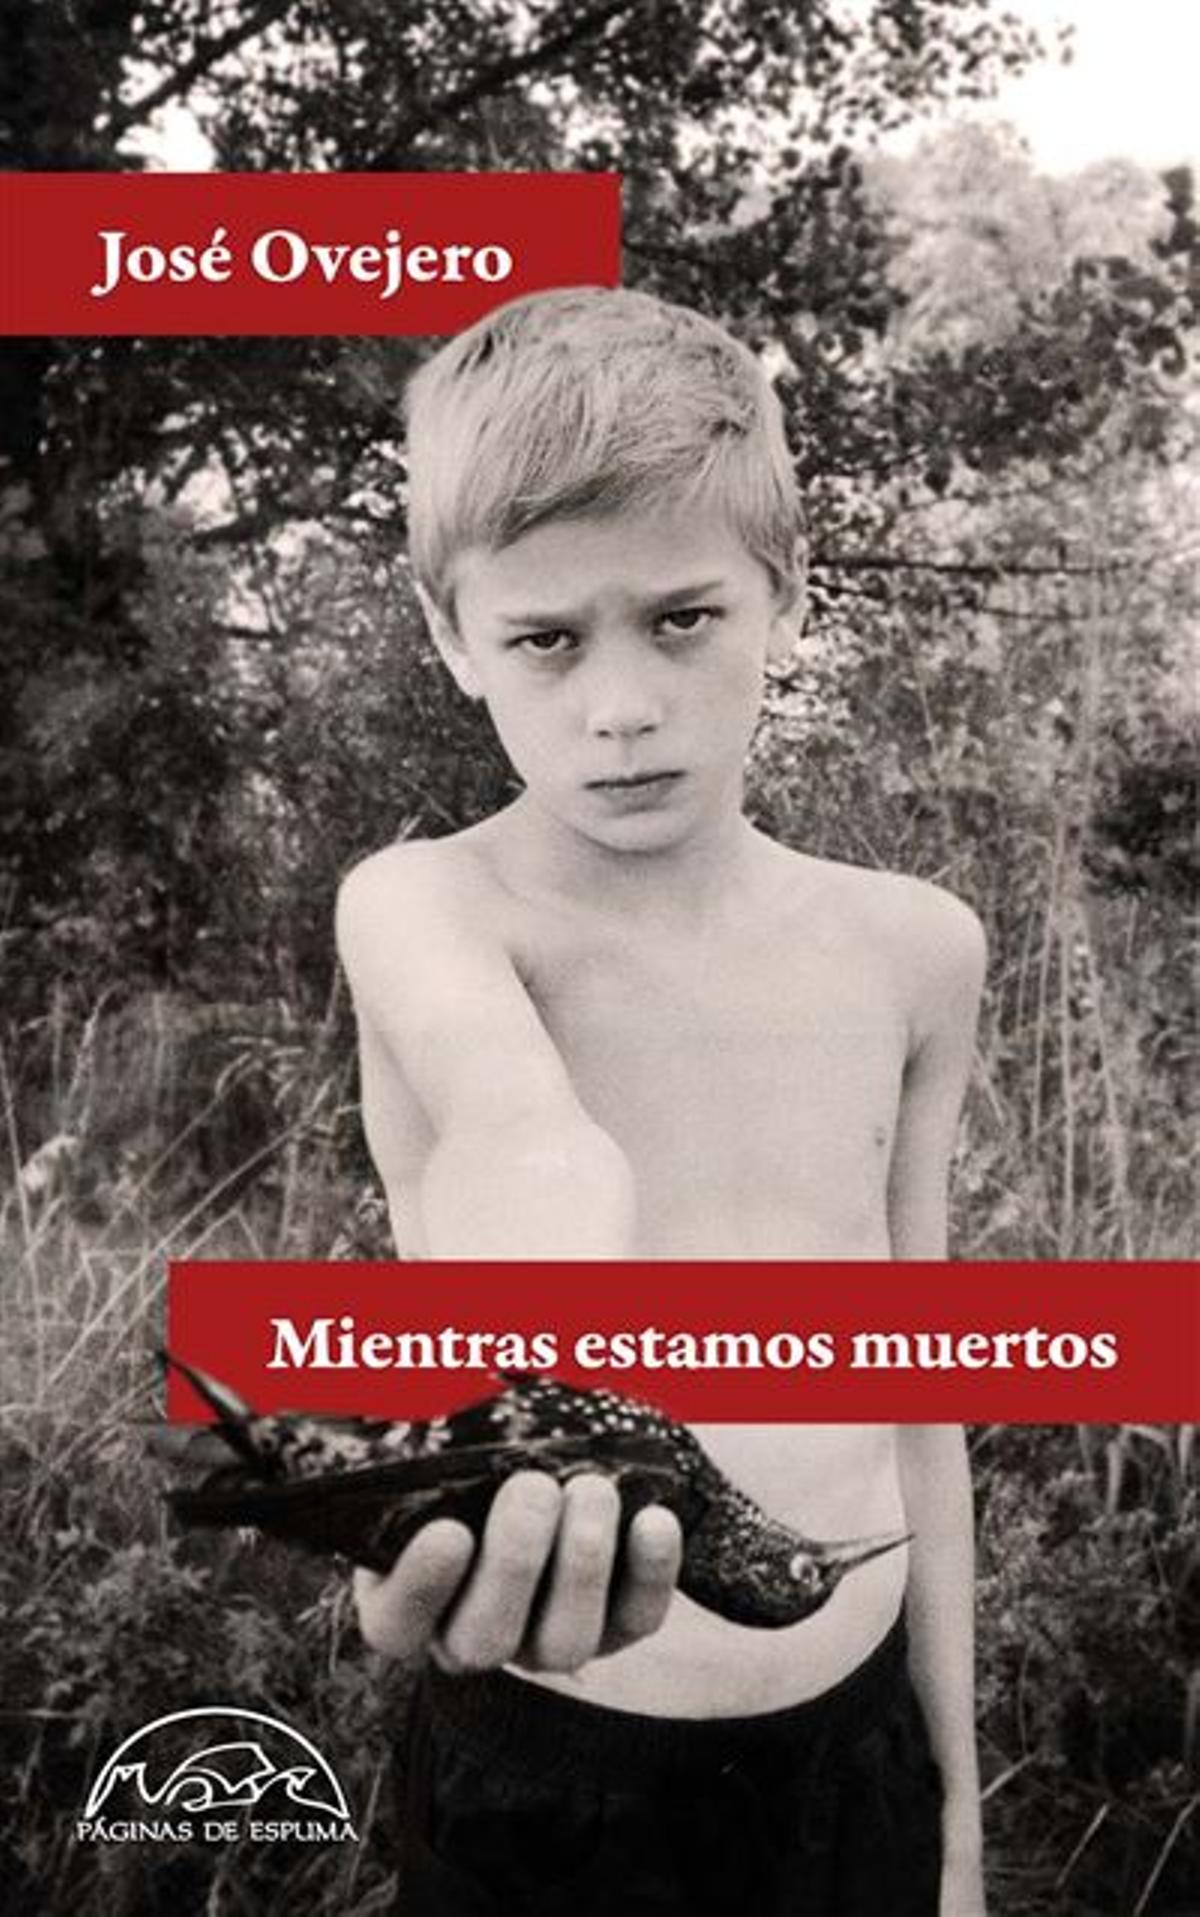 'Mientras estamos muertos', de José Ovejero.  Editorial: Páginas de espuma. Precio 16,15 €